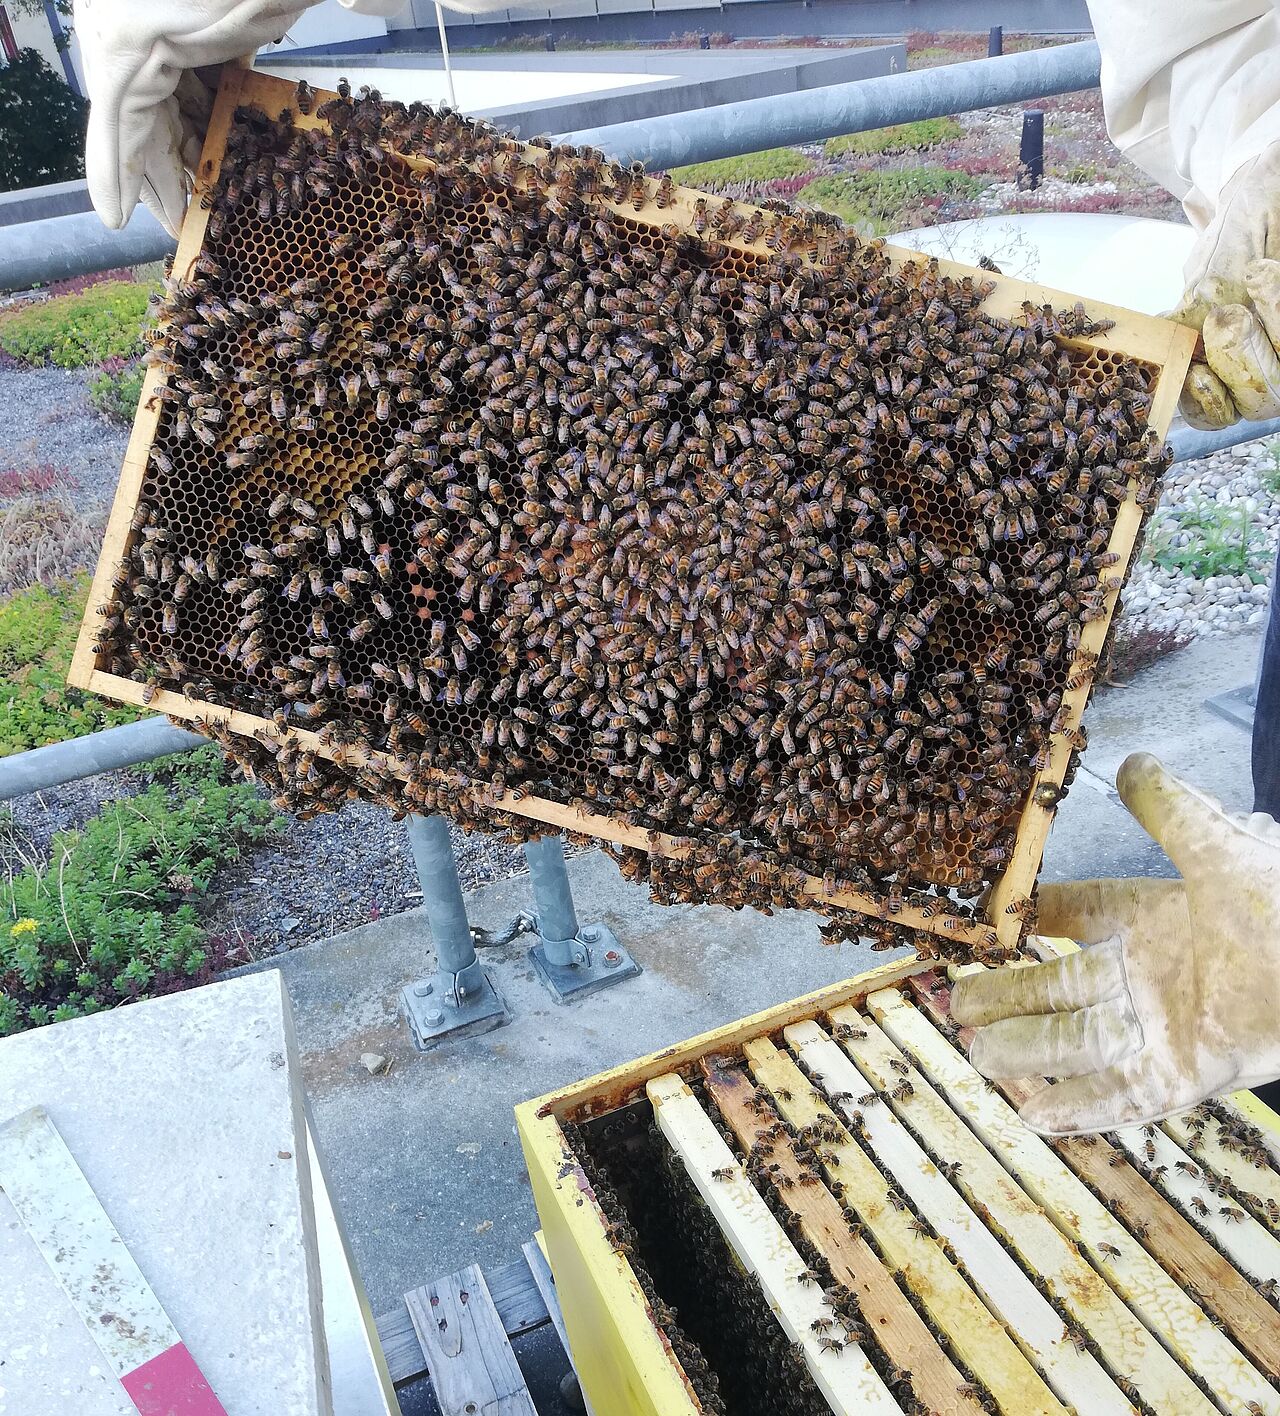 Mit dem richtigen Umgang lassen sich die Bienen ganz friedlich handhaben